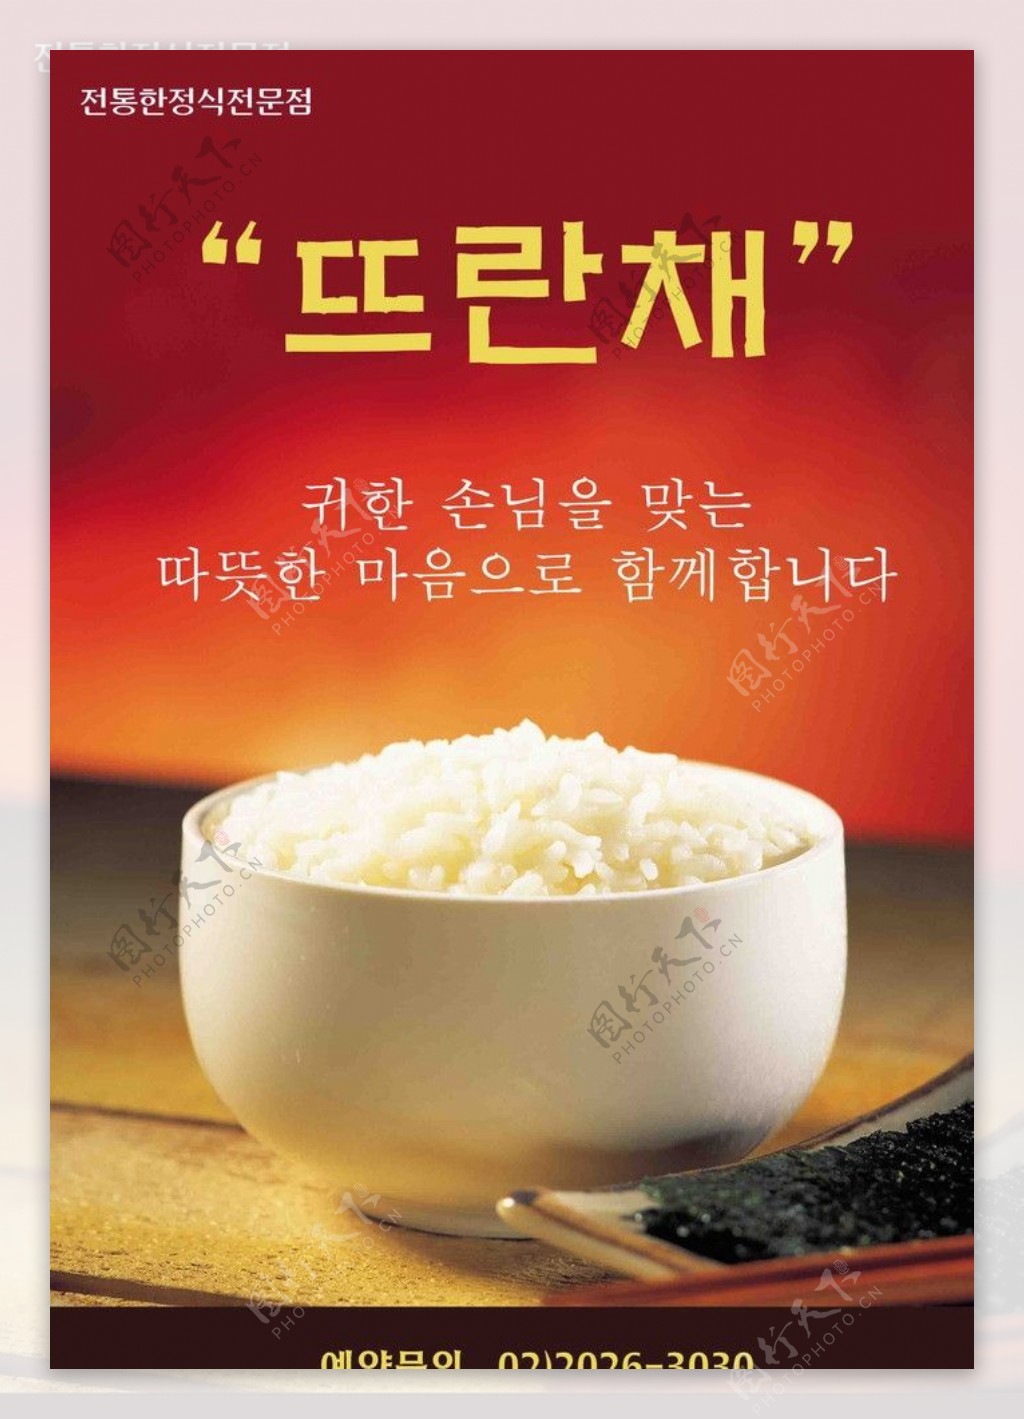 韩国米饭专题海报图片